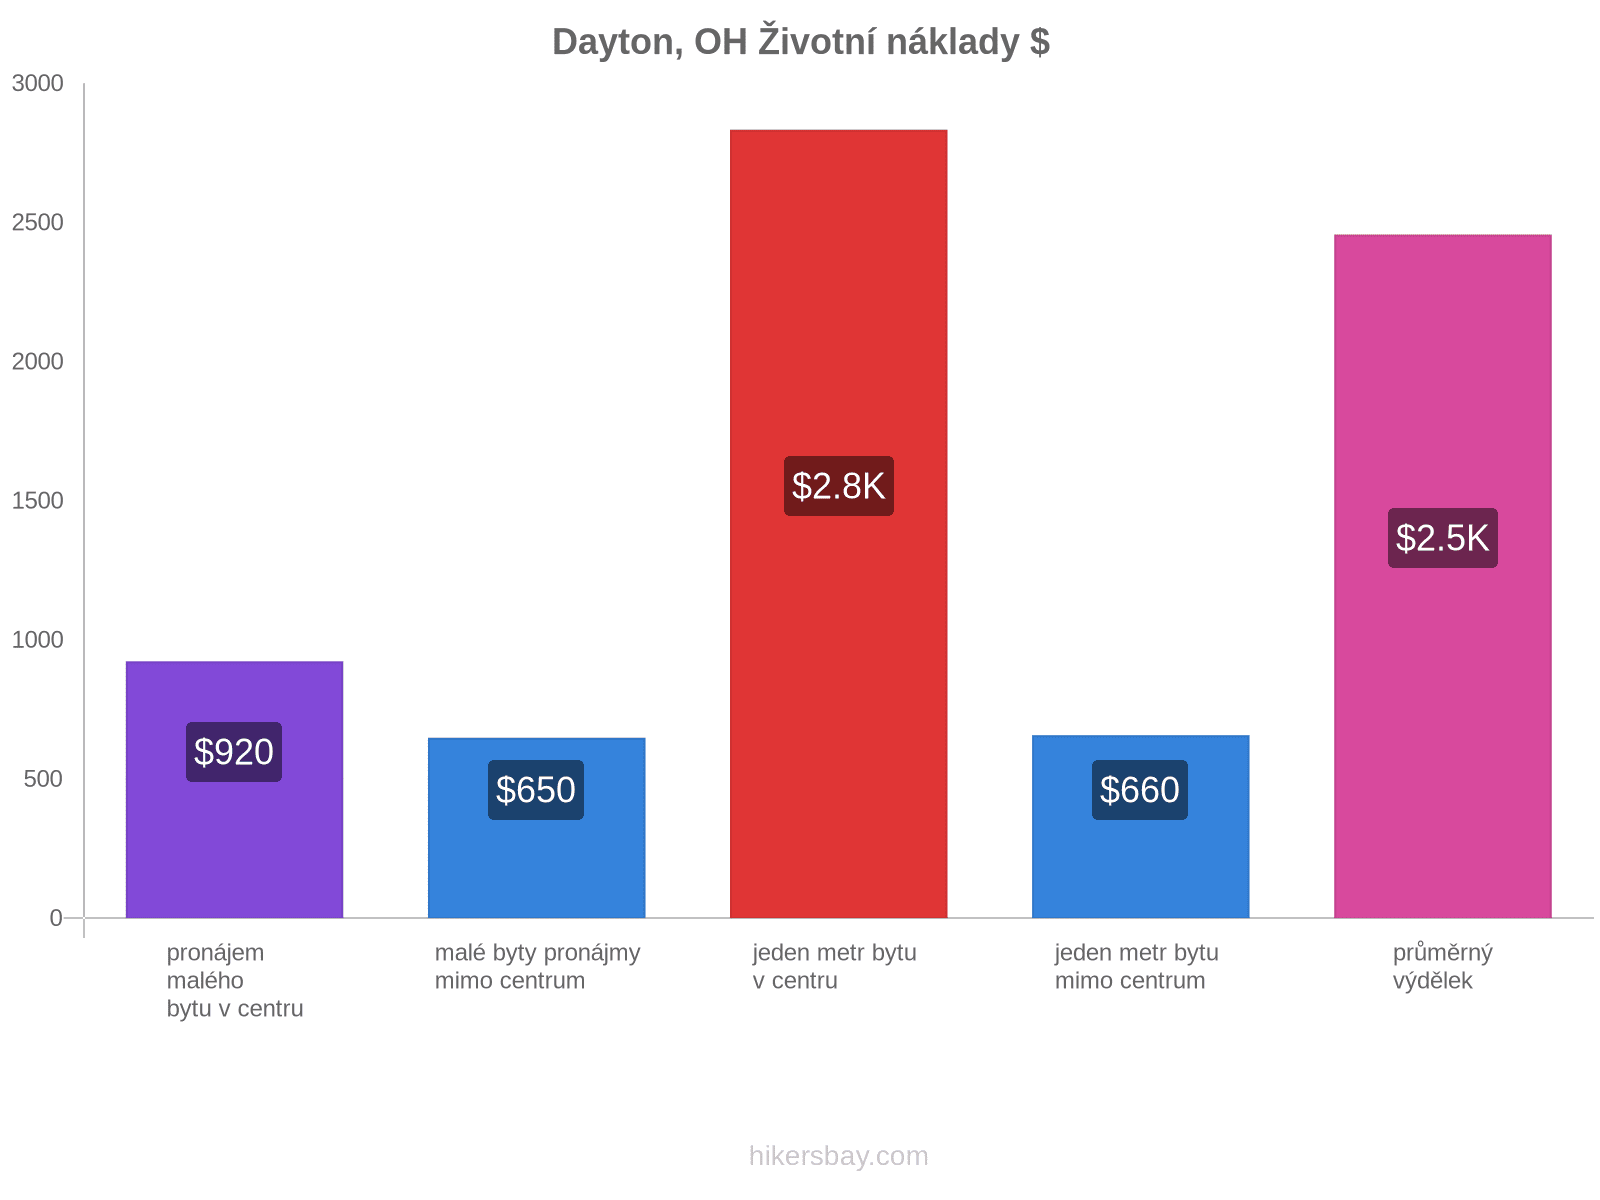 Dayton, OH životní náklady hikersbay.com